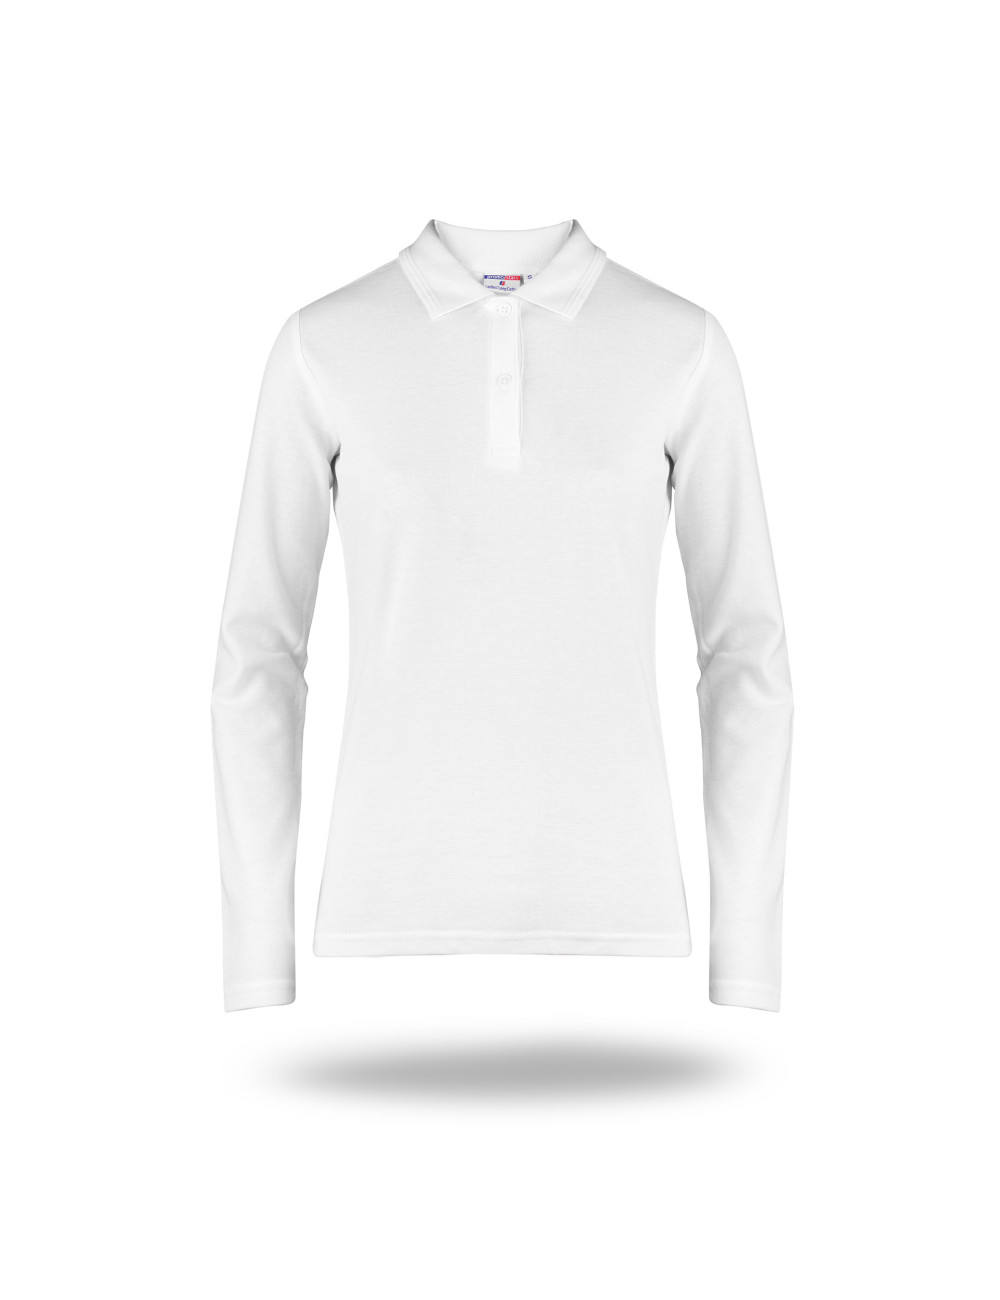 Damen-Poloshirt aus Baumwolle, lang, weiß, Promostars